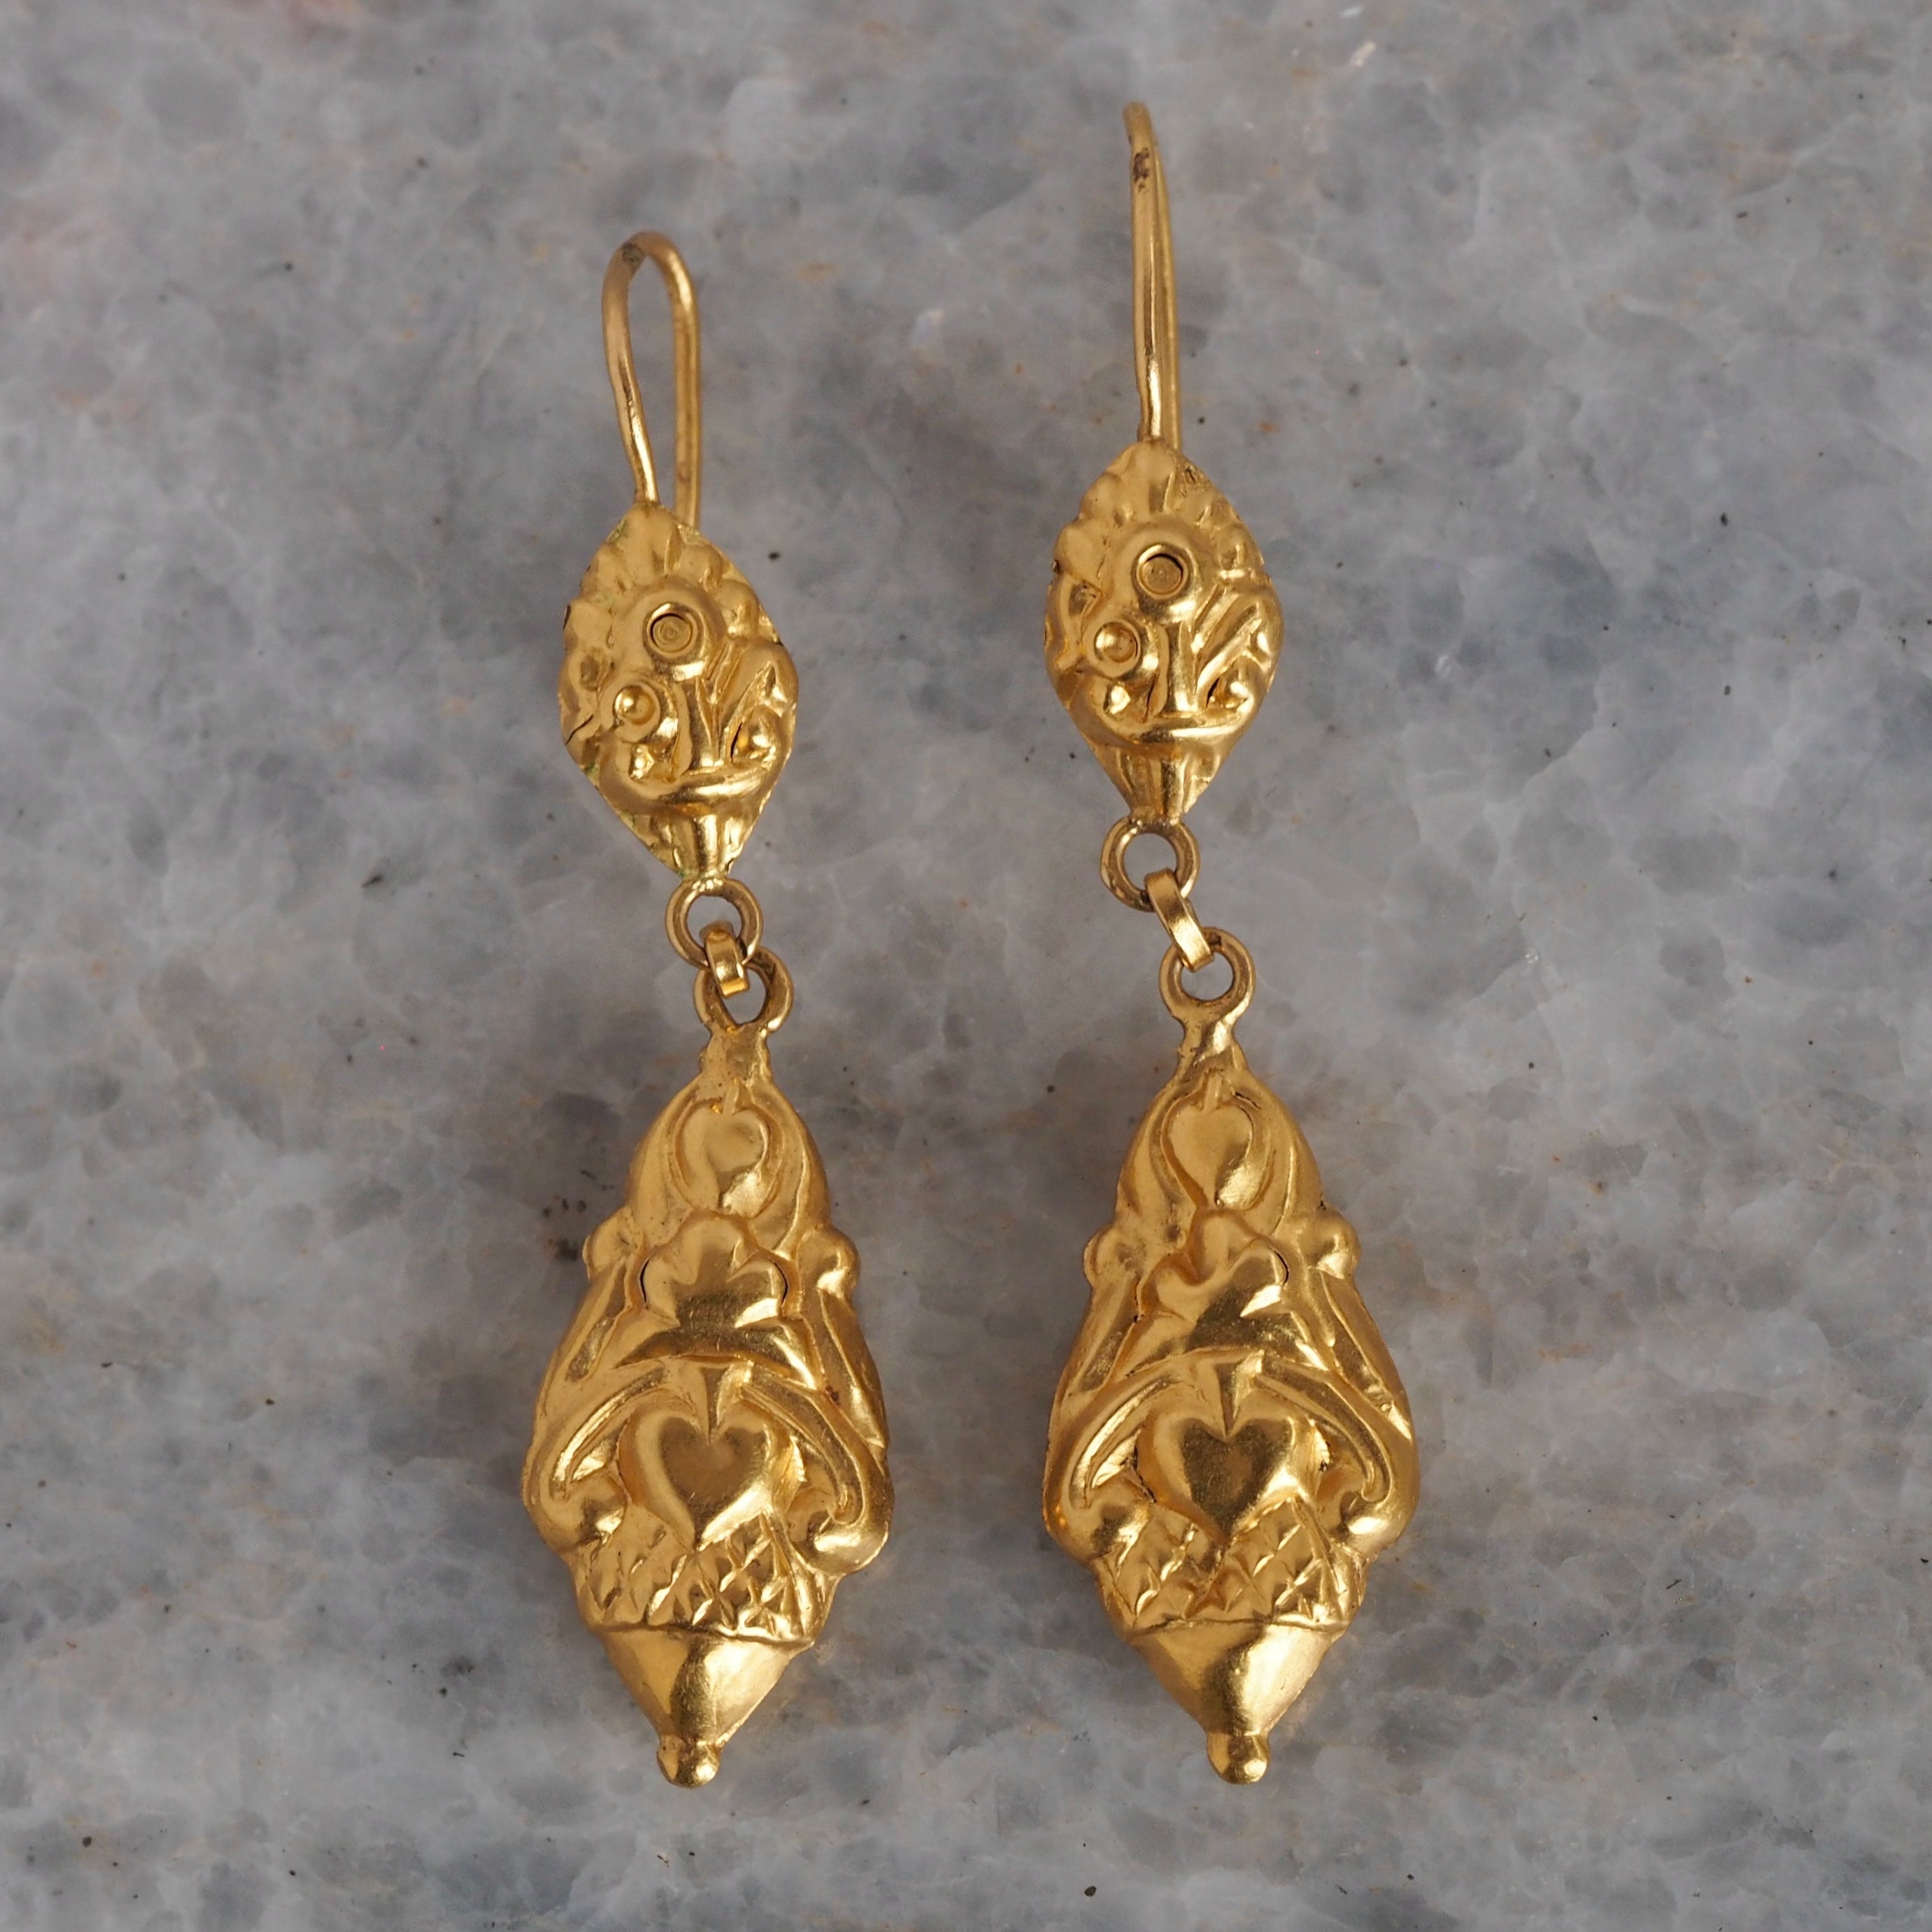 Antique Portuguese 19k Gold Repoussé Drop Earrings